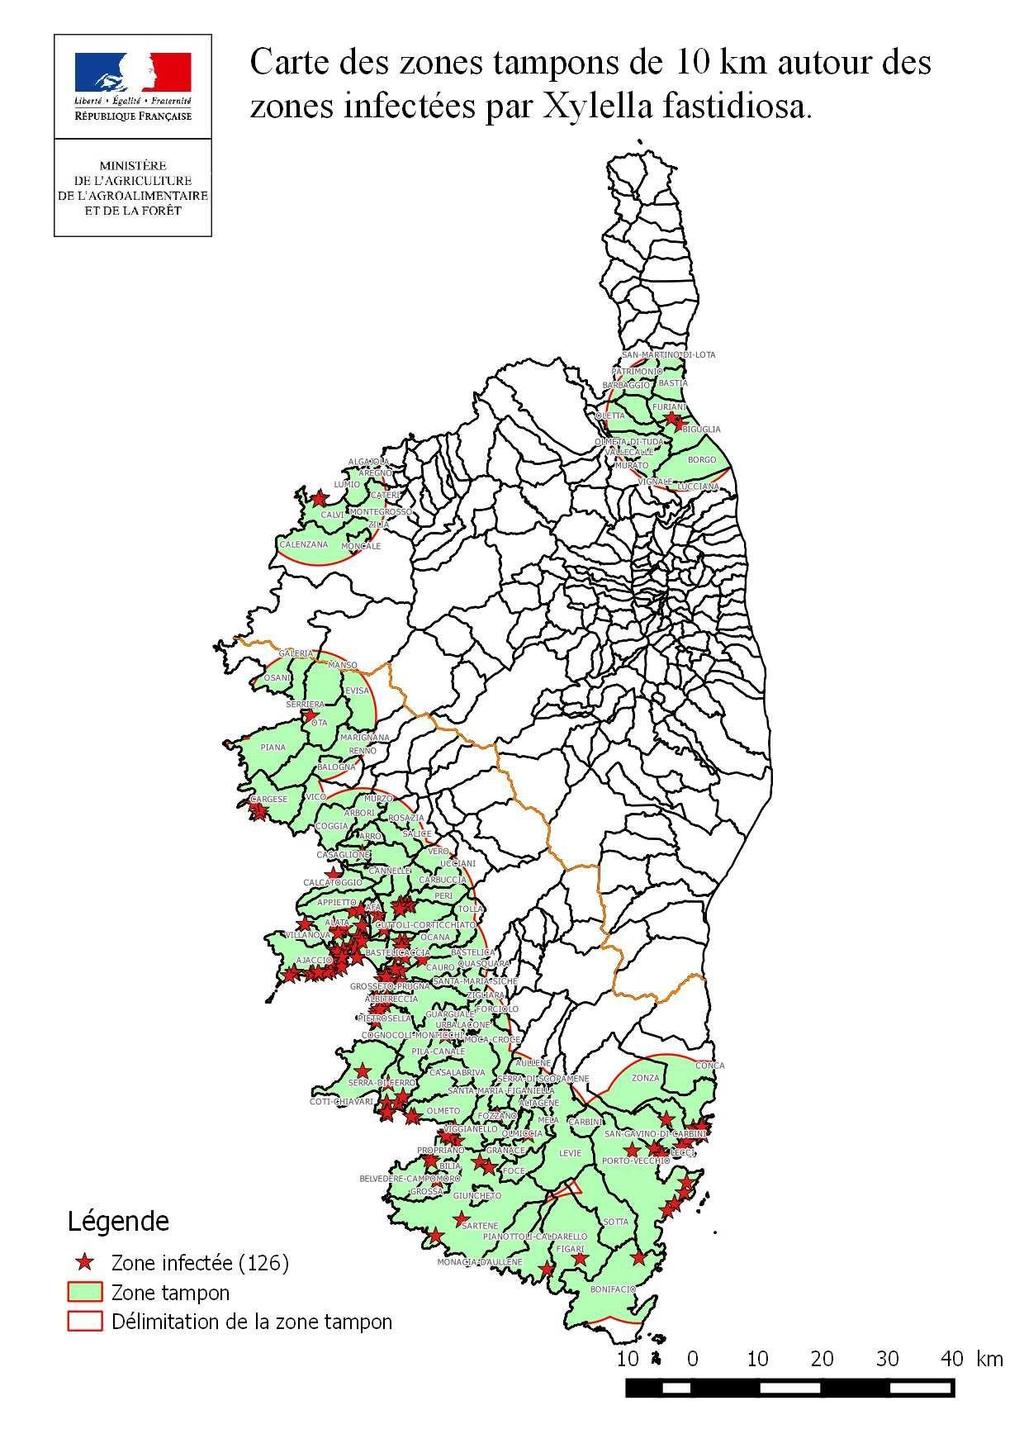 22 luglio 2015 Ritrovamento in Corsica di piante di Polygala infette da